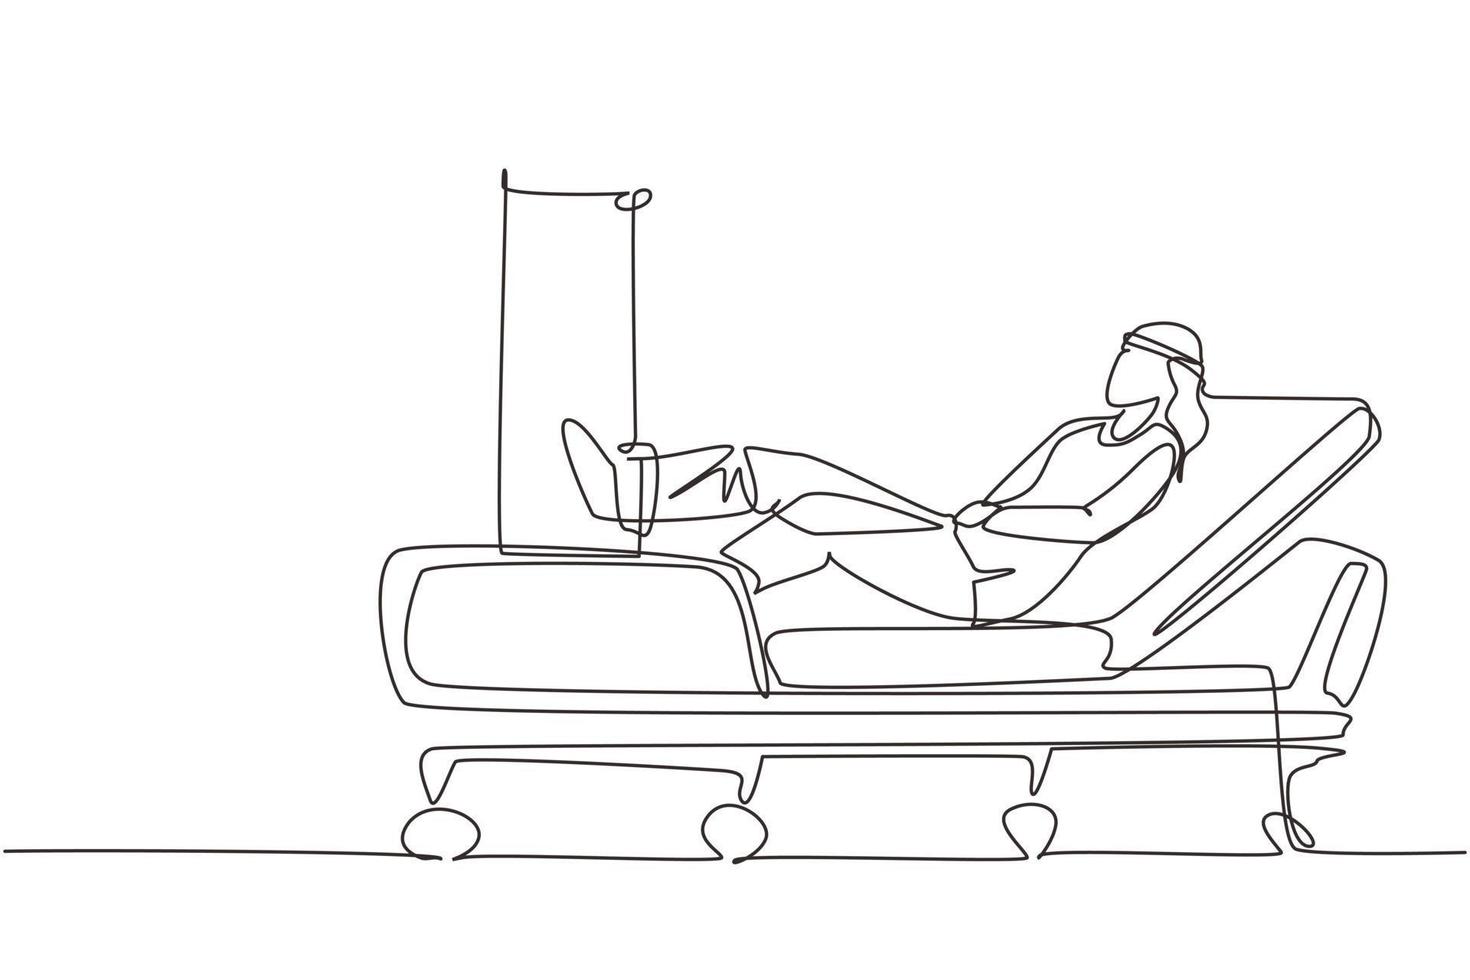 Dibujo de una sola línea continua mujer paciente con pierna rota acostada en el hospital. hospitalización del paciente. la persona enferma está en la cama. la pierna está vendada y fijada con yeso. vector de diseño de dibujo de una línea